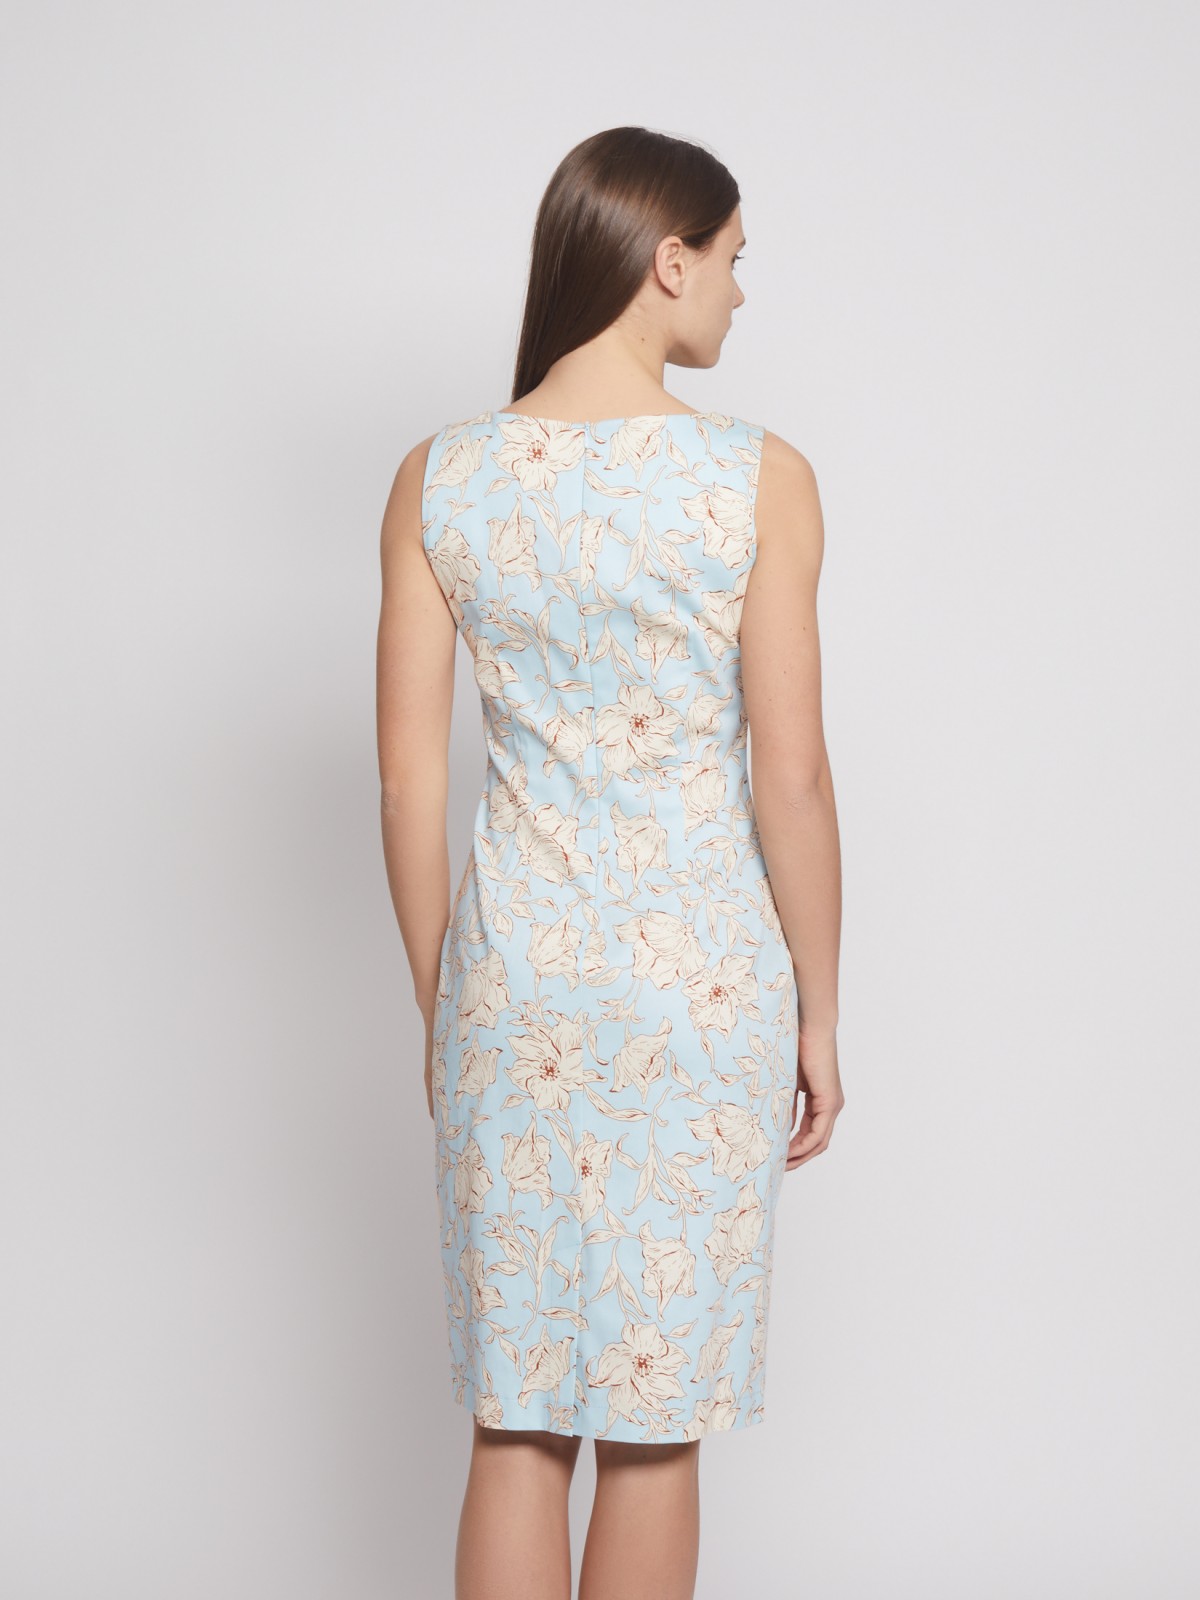 Принтованное платье-футляр без рукавов zolla 022248239322, цвет светло-голубой, размер XS - фото 5